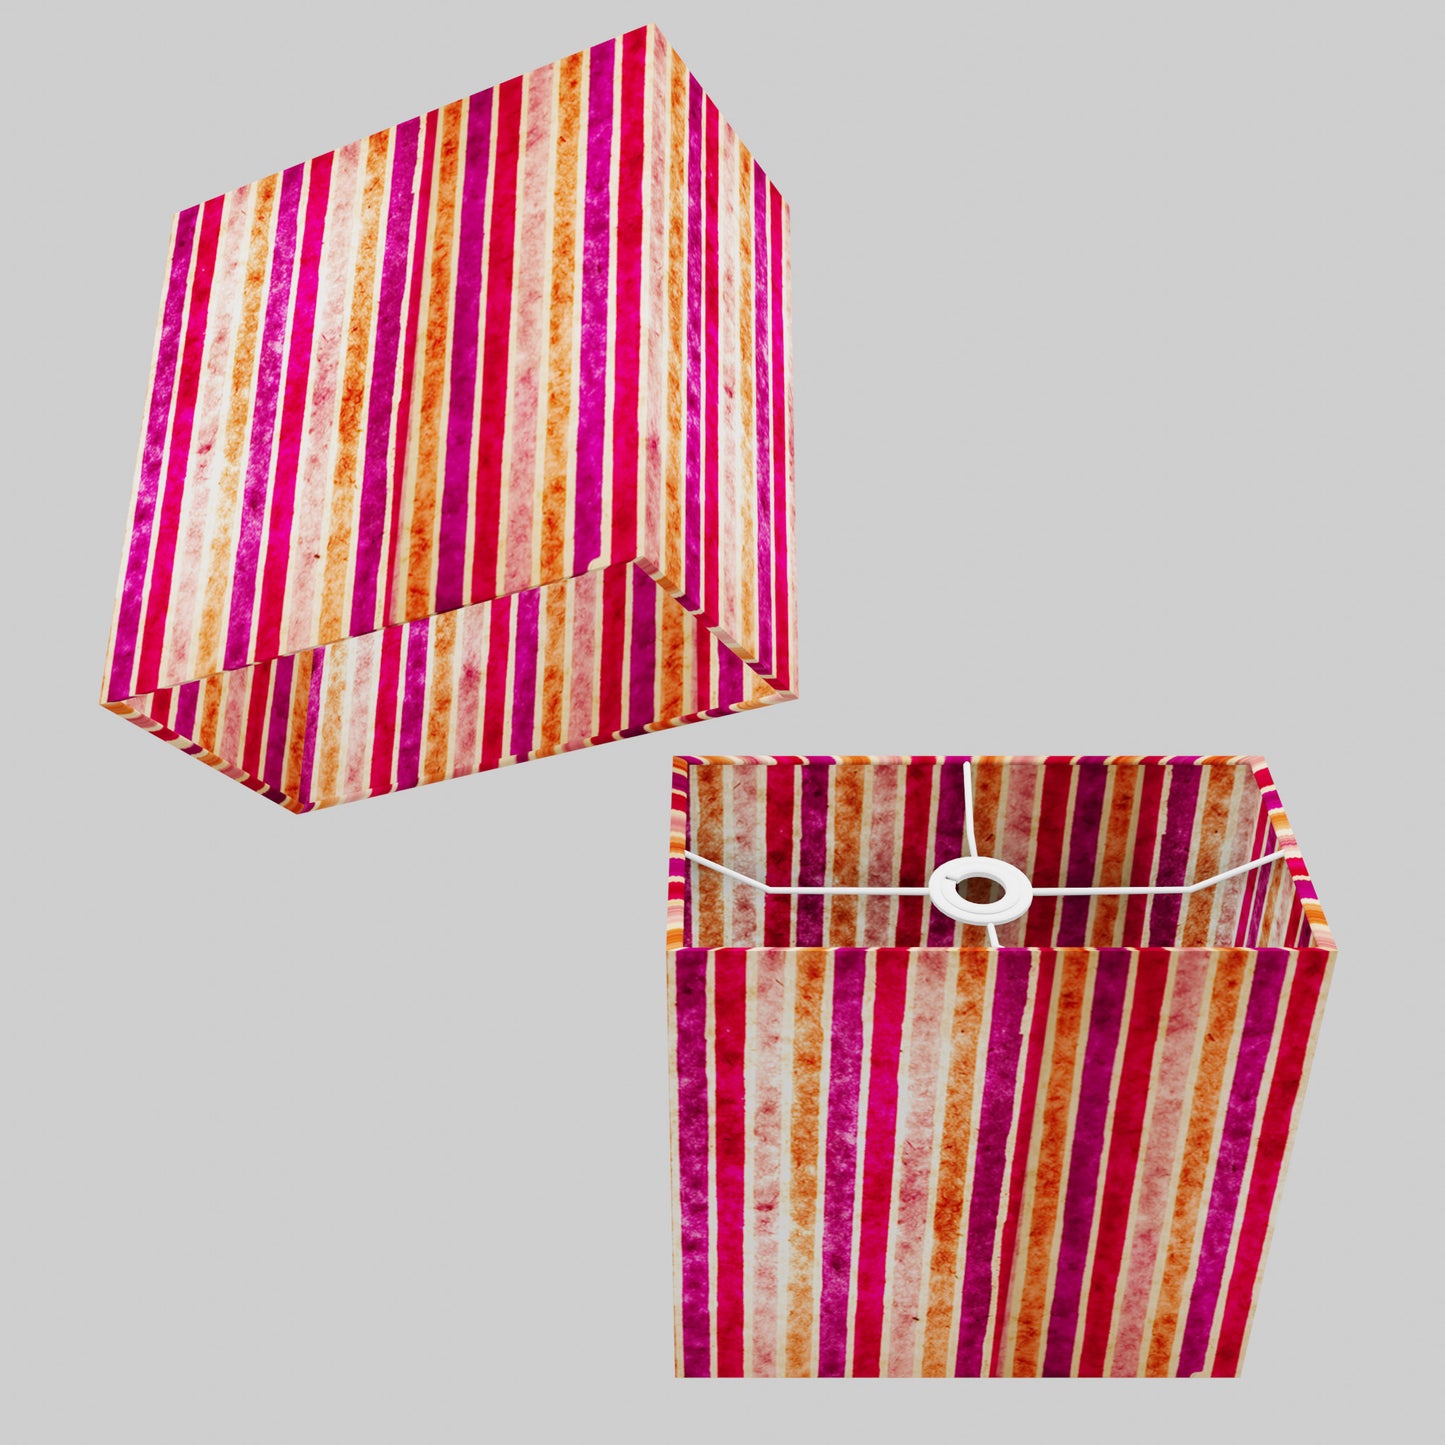 Rectangle Lamp Shade - P04 - Batik Stripes Pink, 30cm(w) x 30cm(h) x 15cm(d)